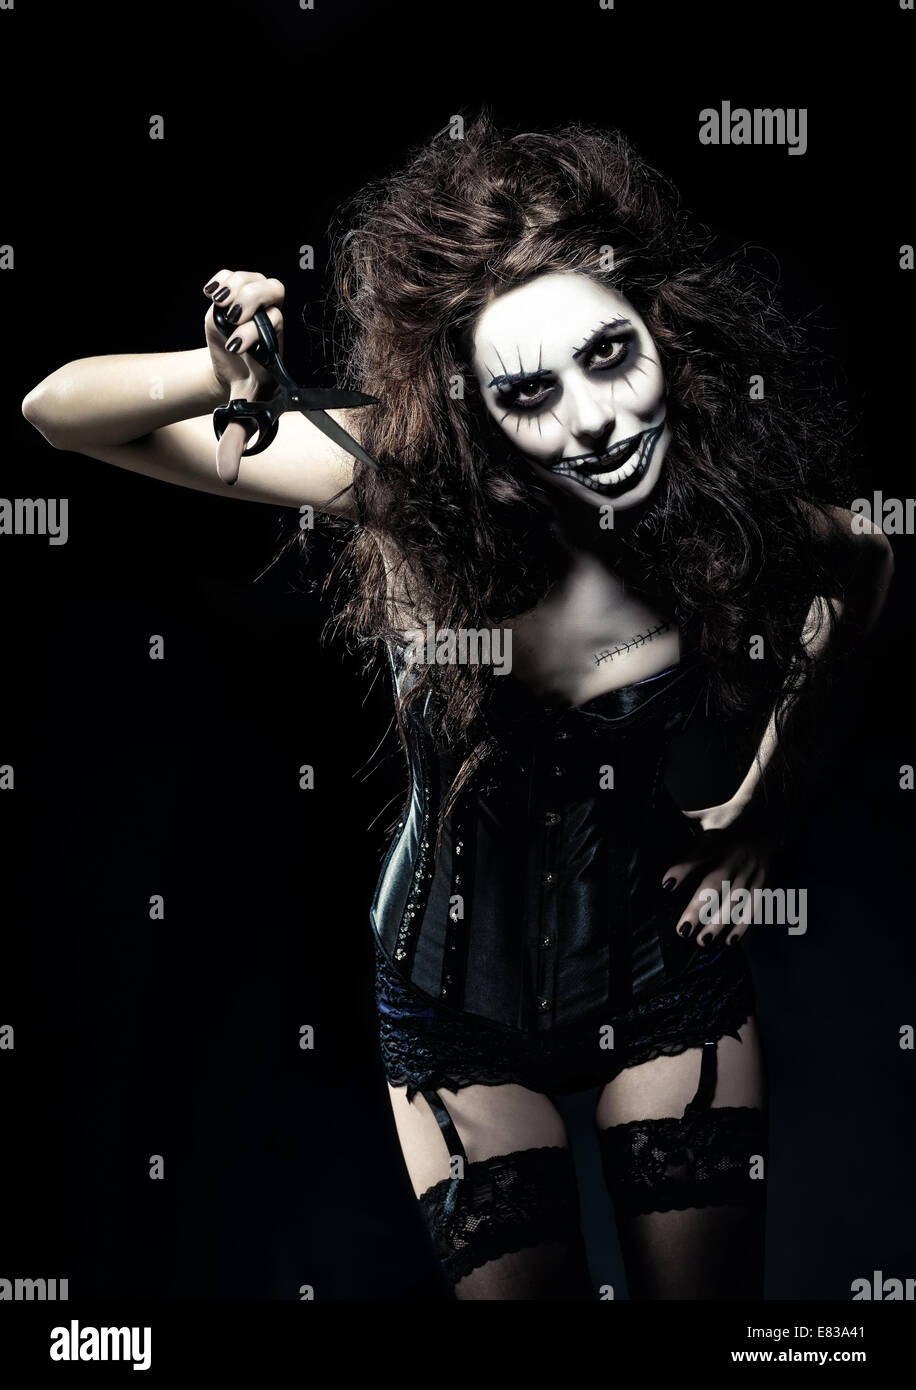 Jeune femme à l'image d'un gothique mal freak clown avec des ciseaux dans la main Banque D'Images